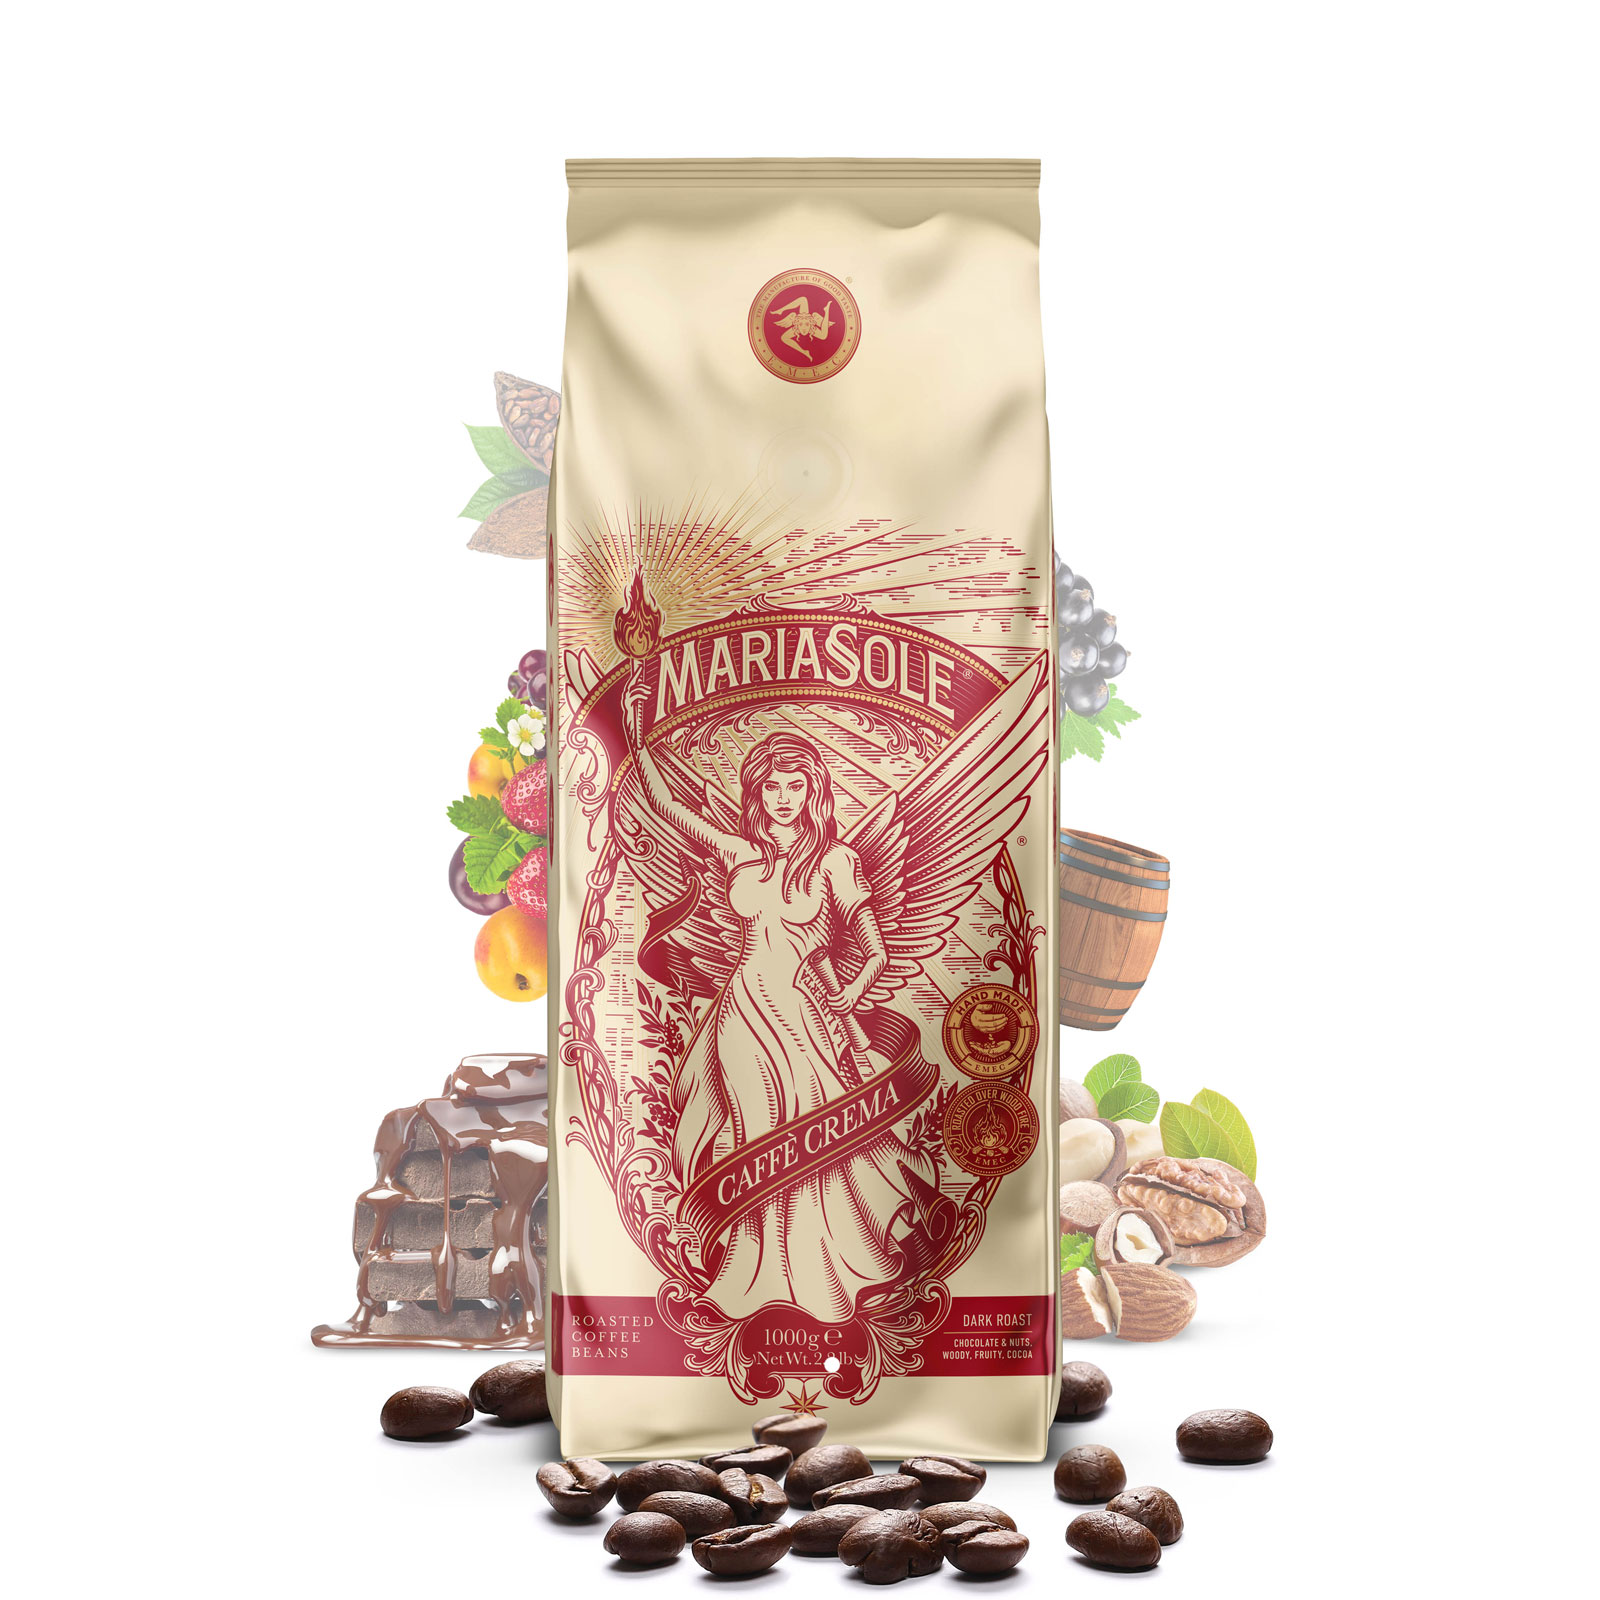 MARIASOLE - Caffè  Crema - 1000g - Bohnen